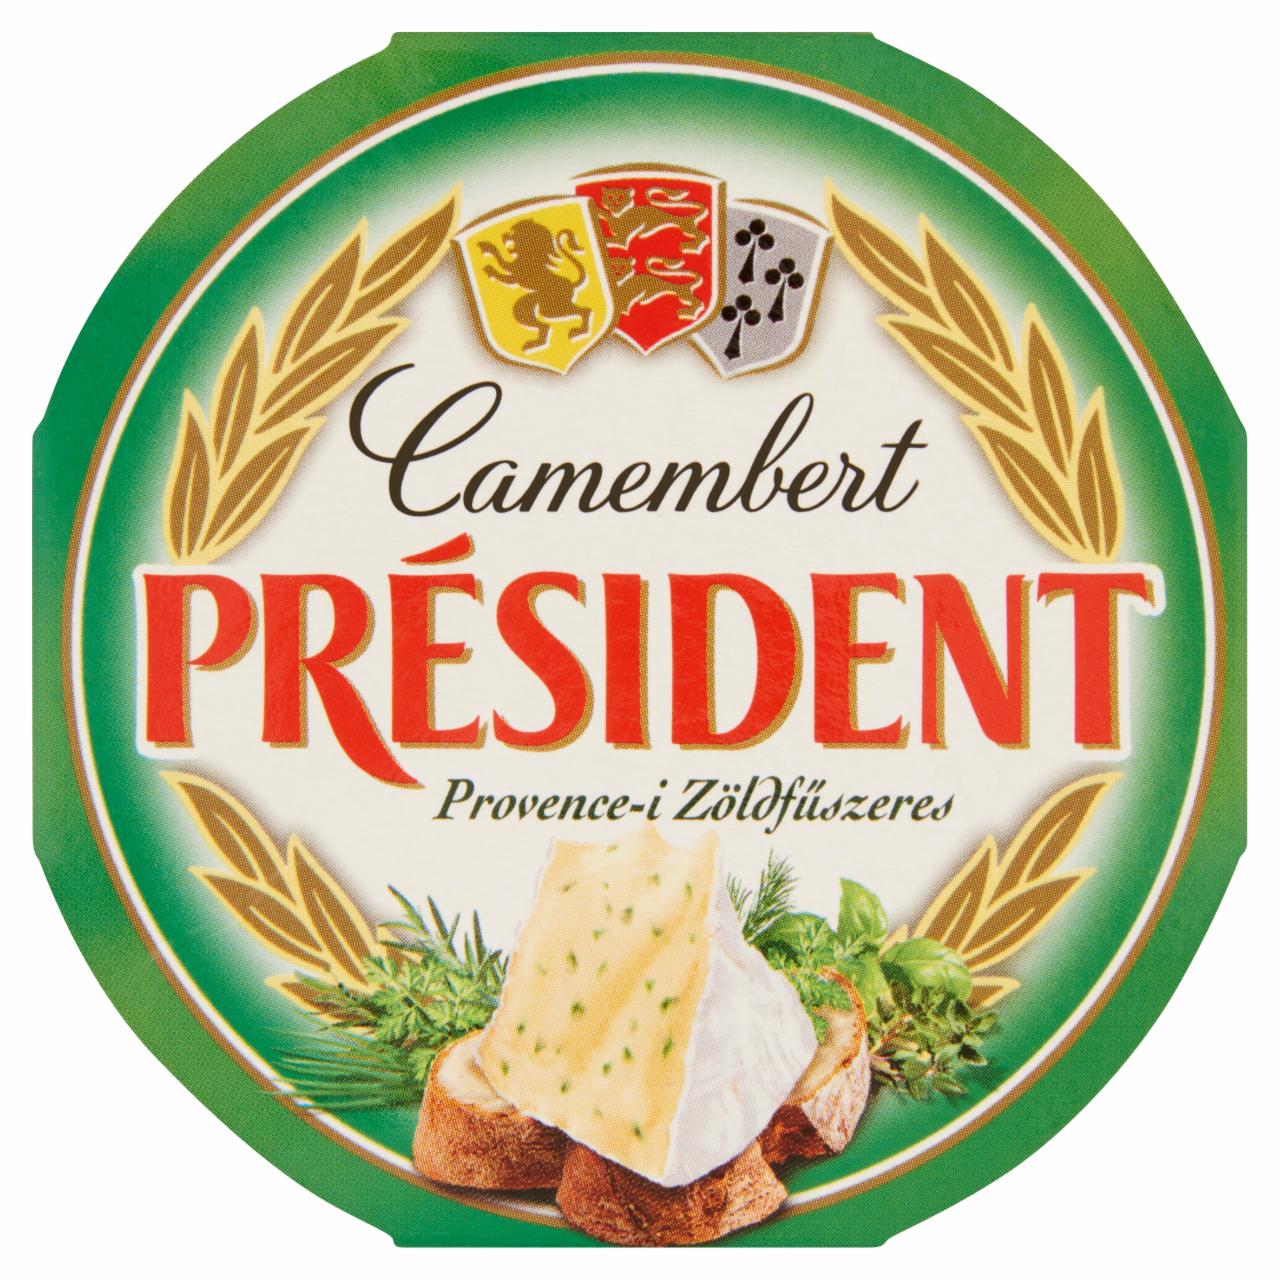 Képek - Président provence-i zöldfűszeres camembert 120 g